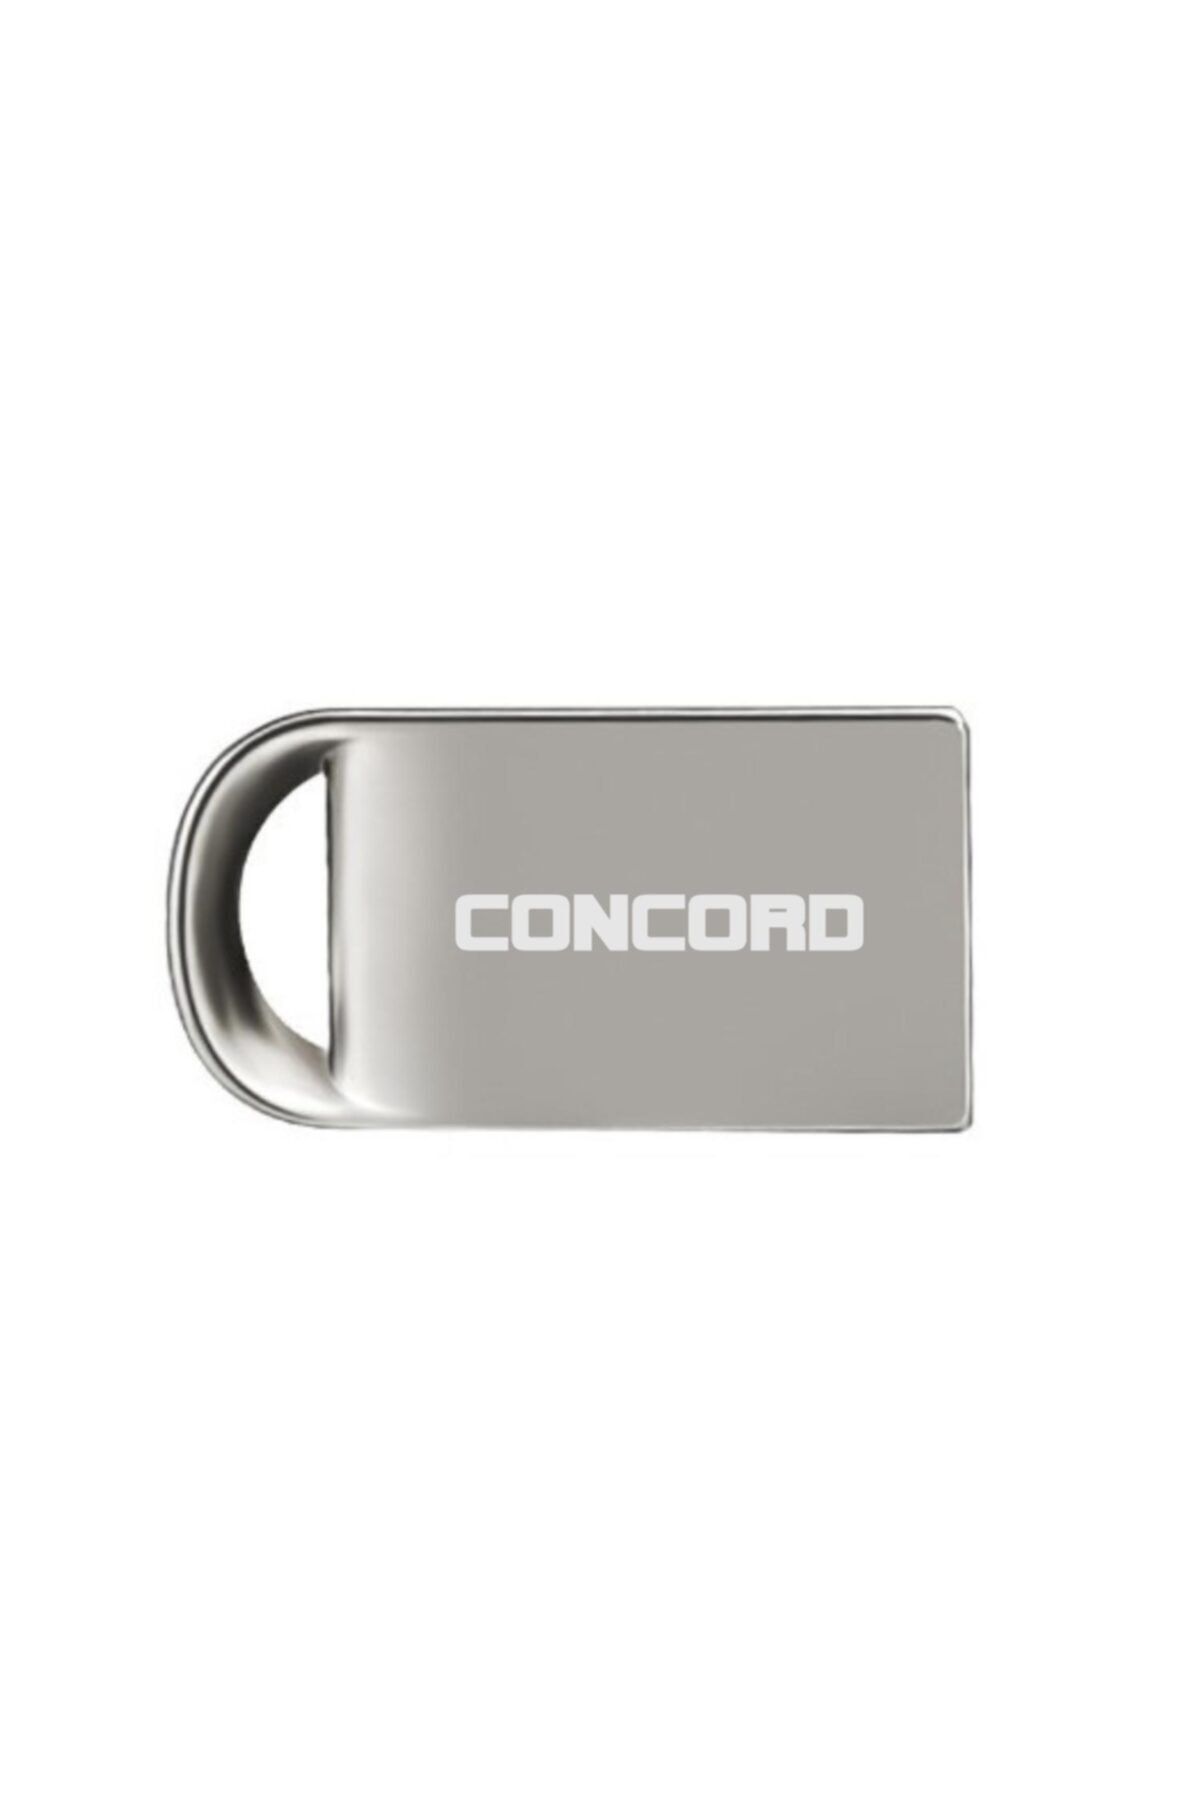 Concord 16gb 3,0 Mini Metal Usb Flash Bellek C-3u16